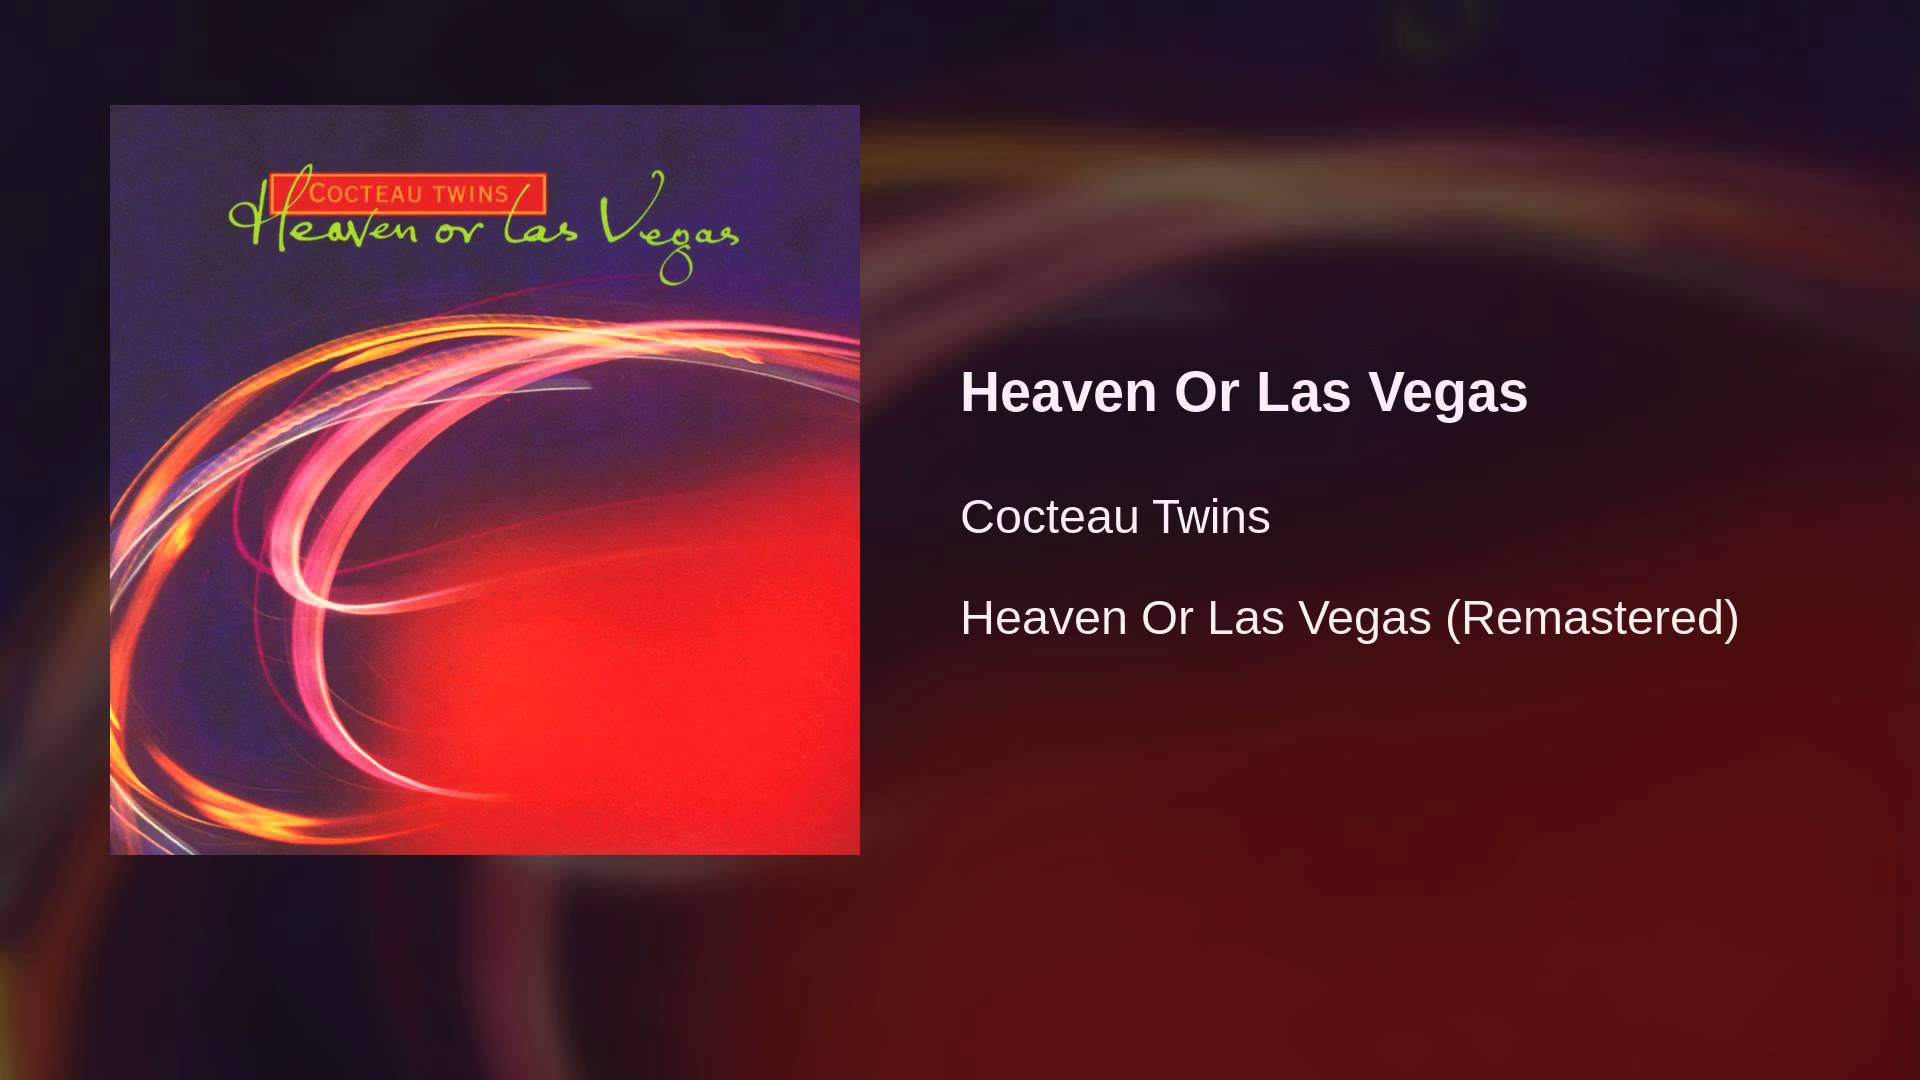 Cocteau Twins Or Las Vegas